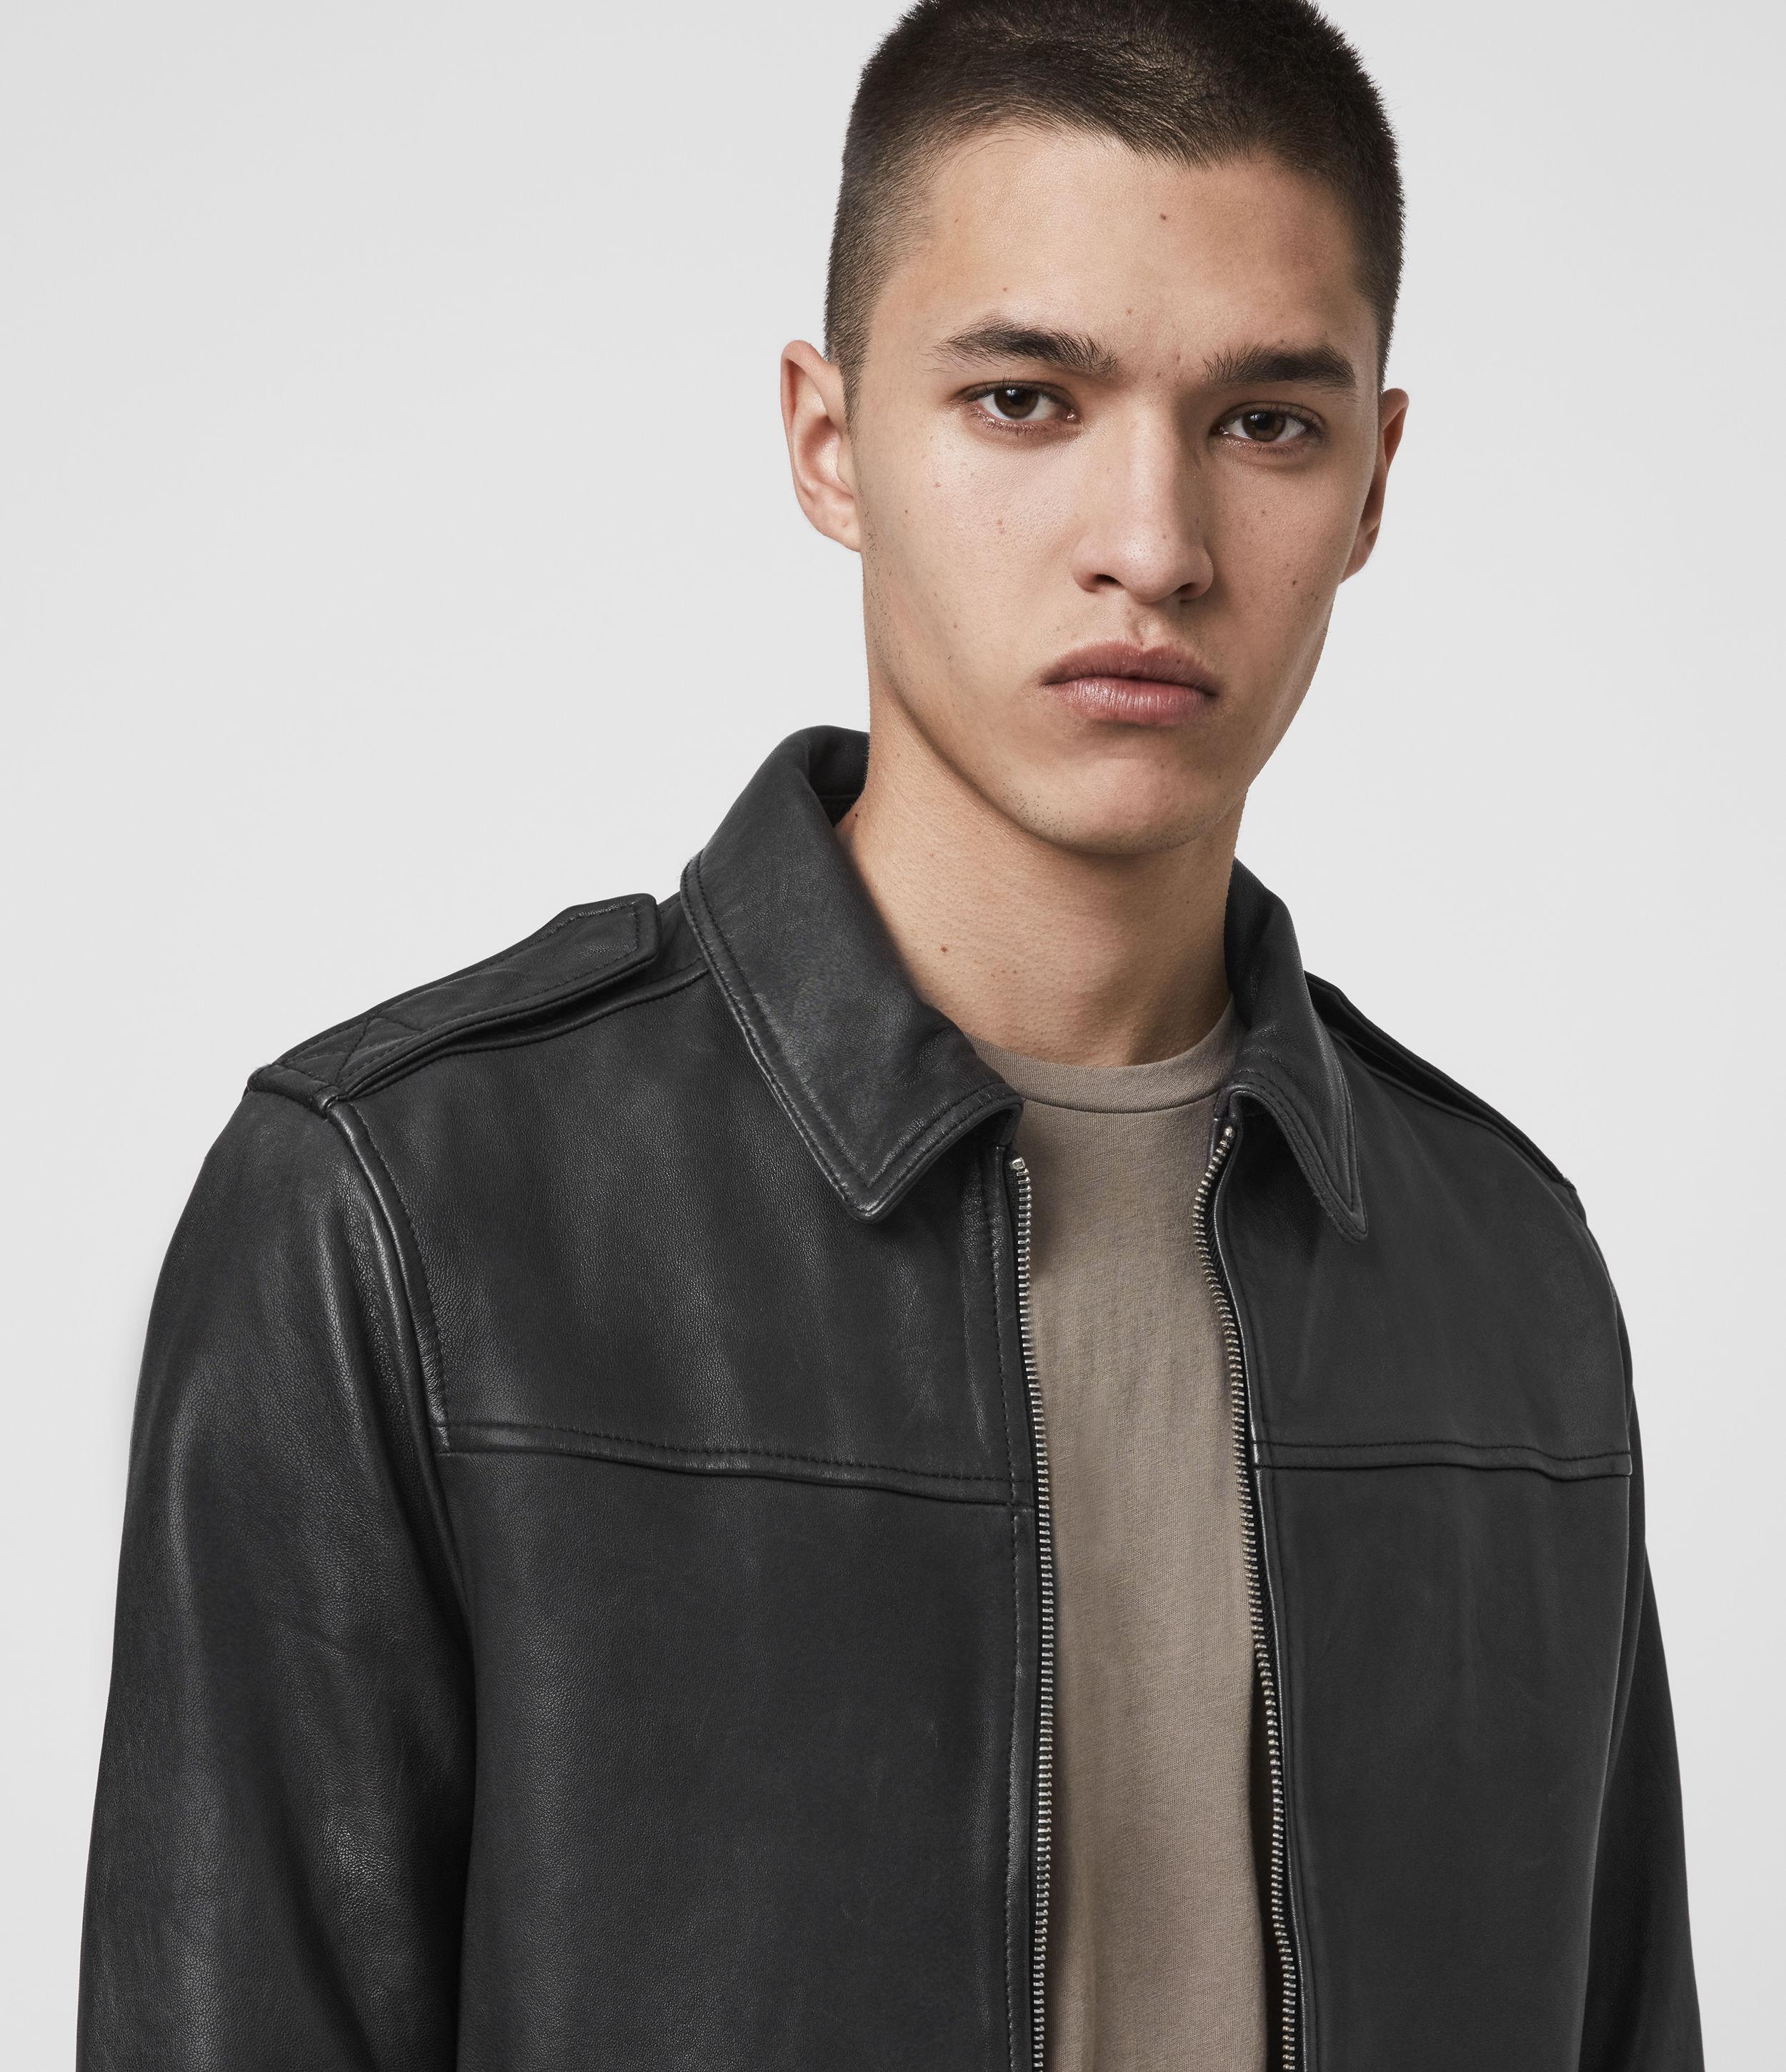 AllSaints Junction Leather Jacket in Black for Men - Lyst